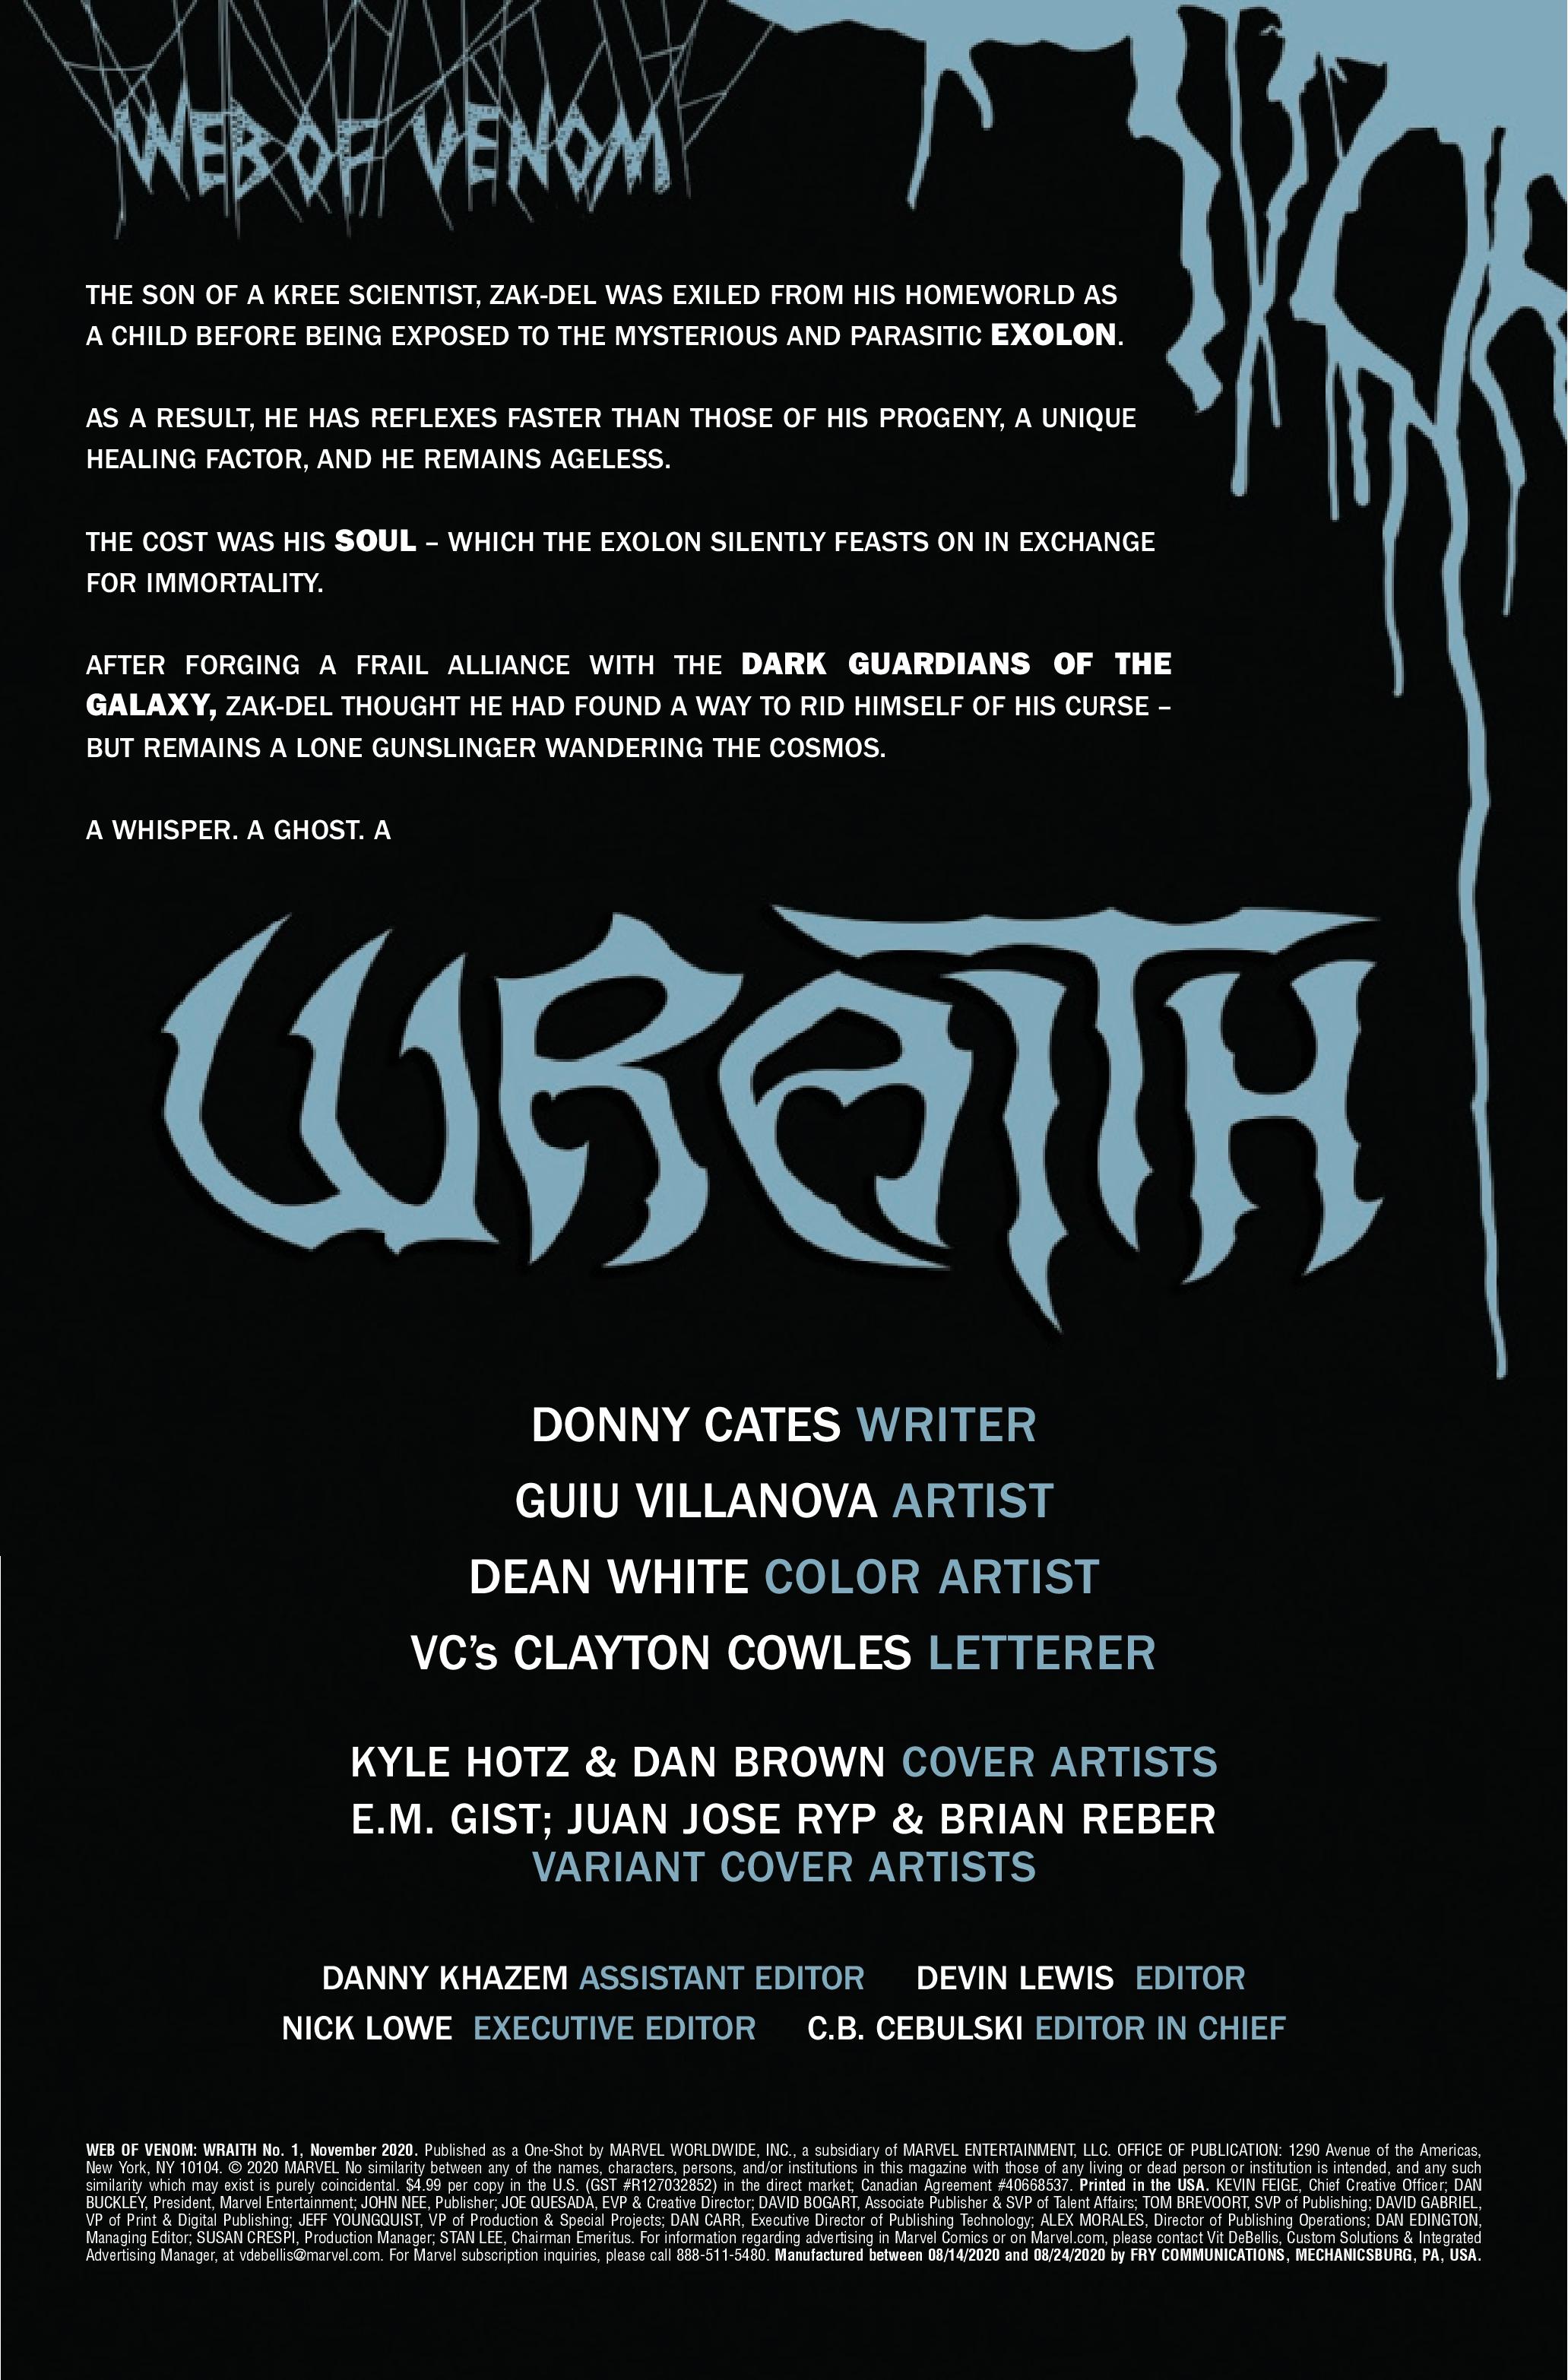 Web of Venom Wraith #1 Ryp Variant